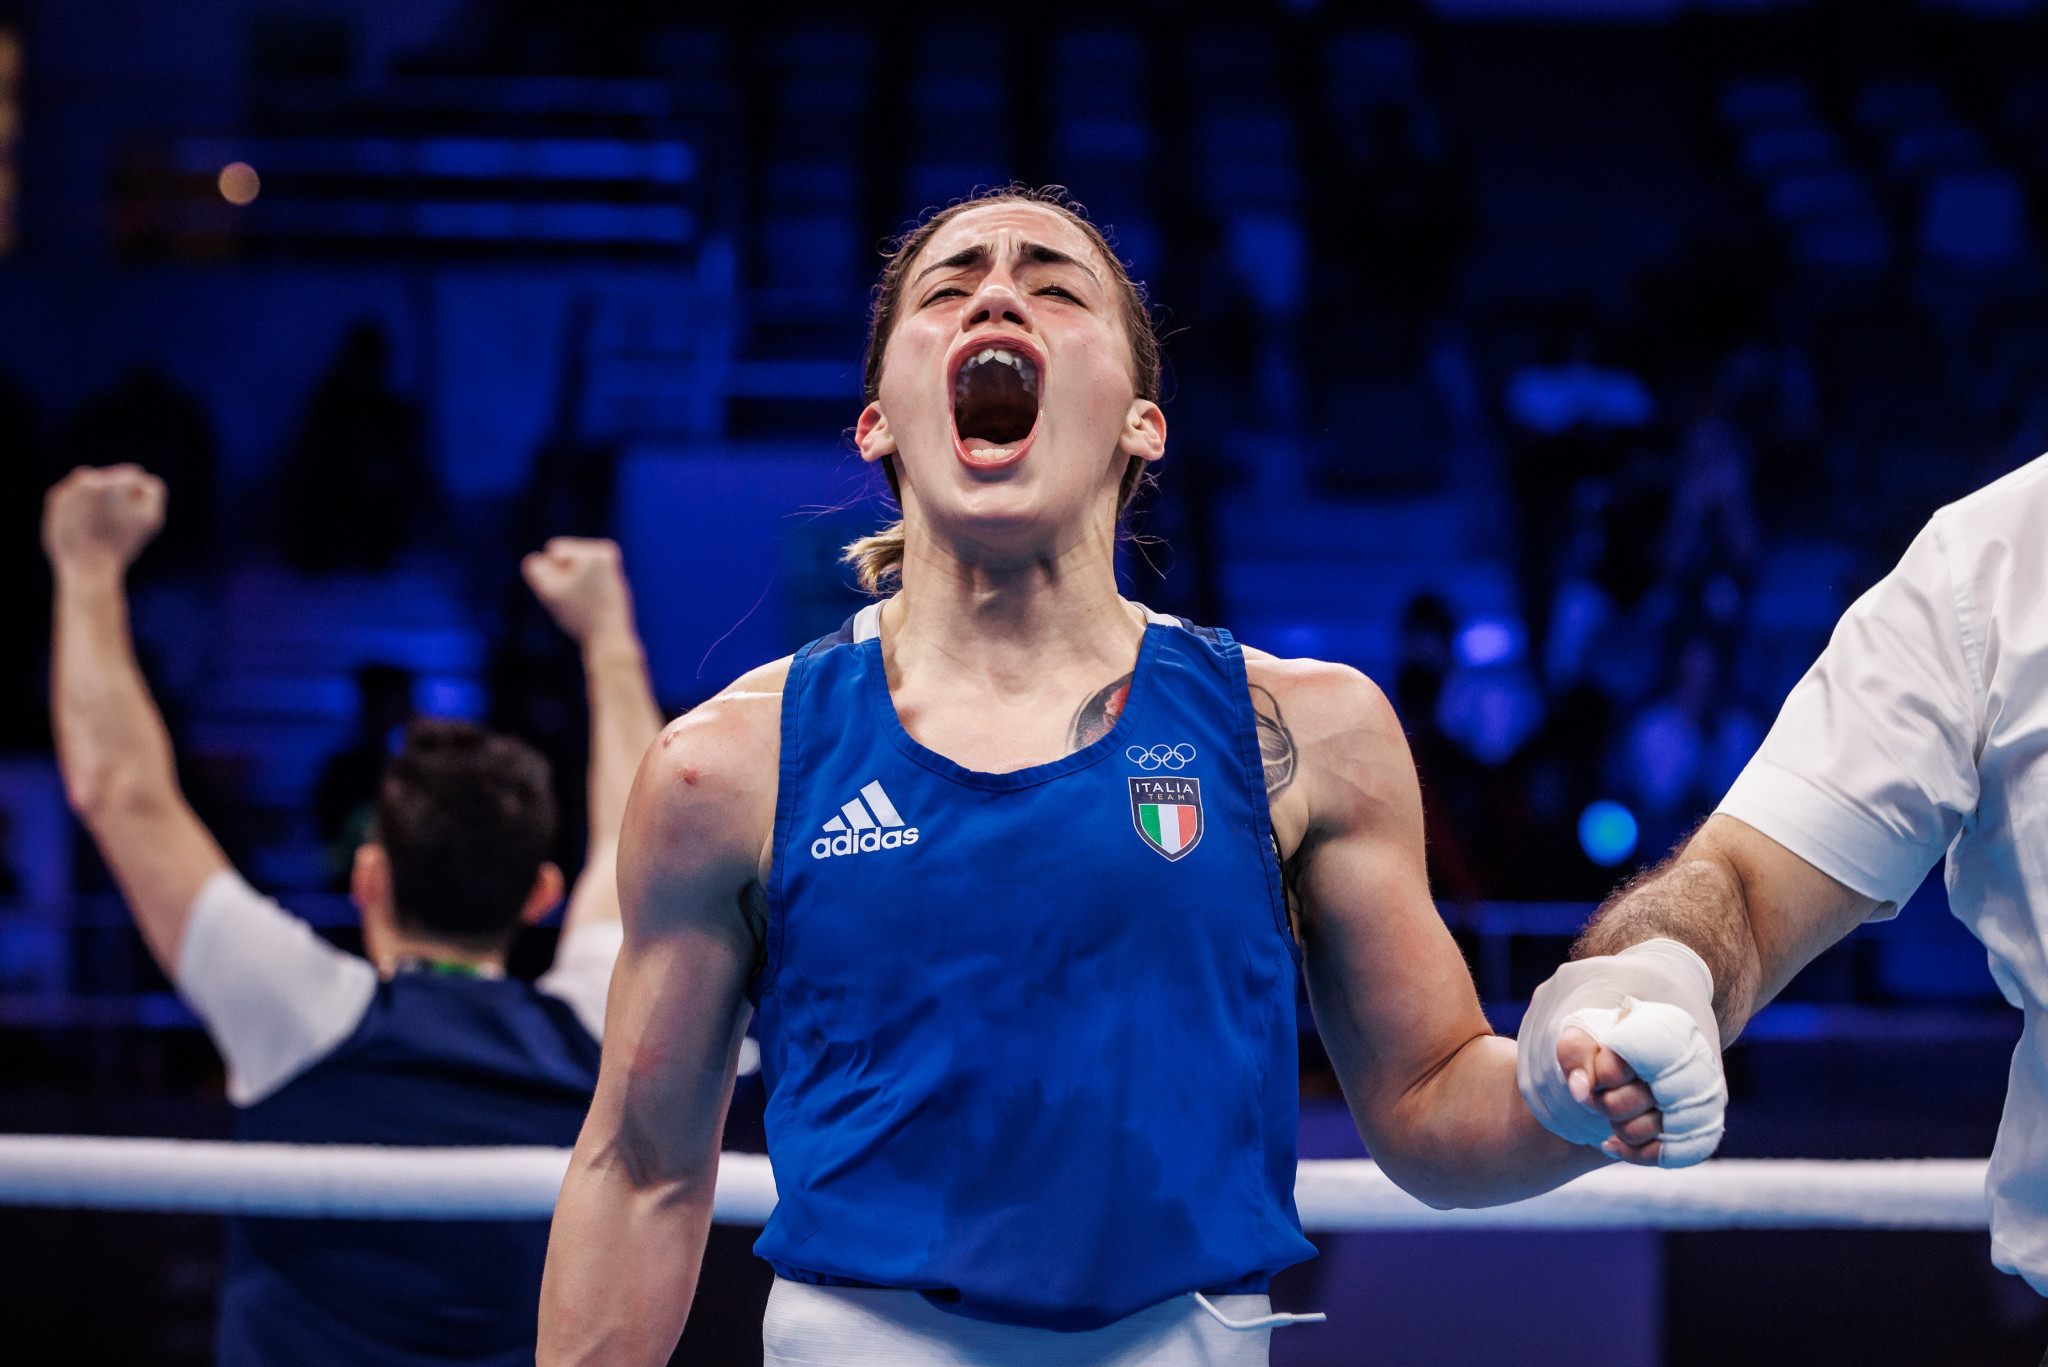 Italy's Giordana Sorrentino roars with delight after beating Russian Ekaterina Paltseva ©IBA